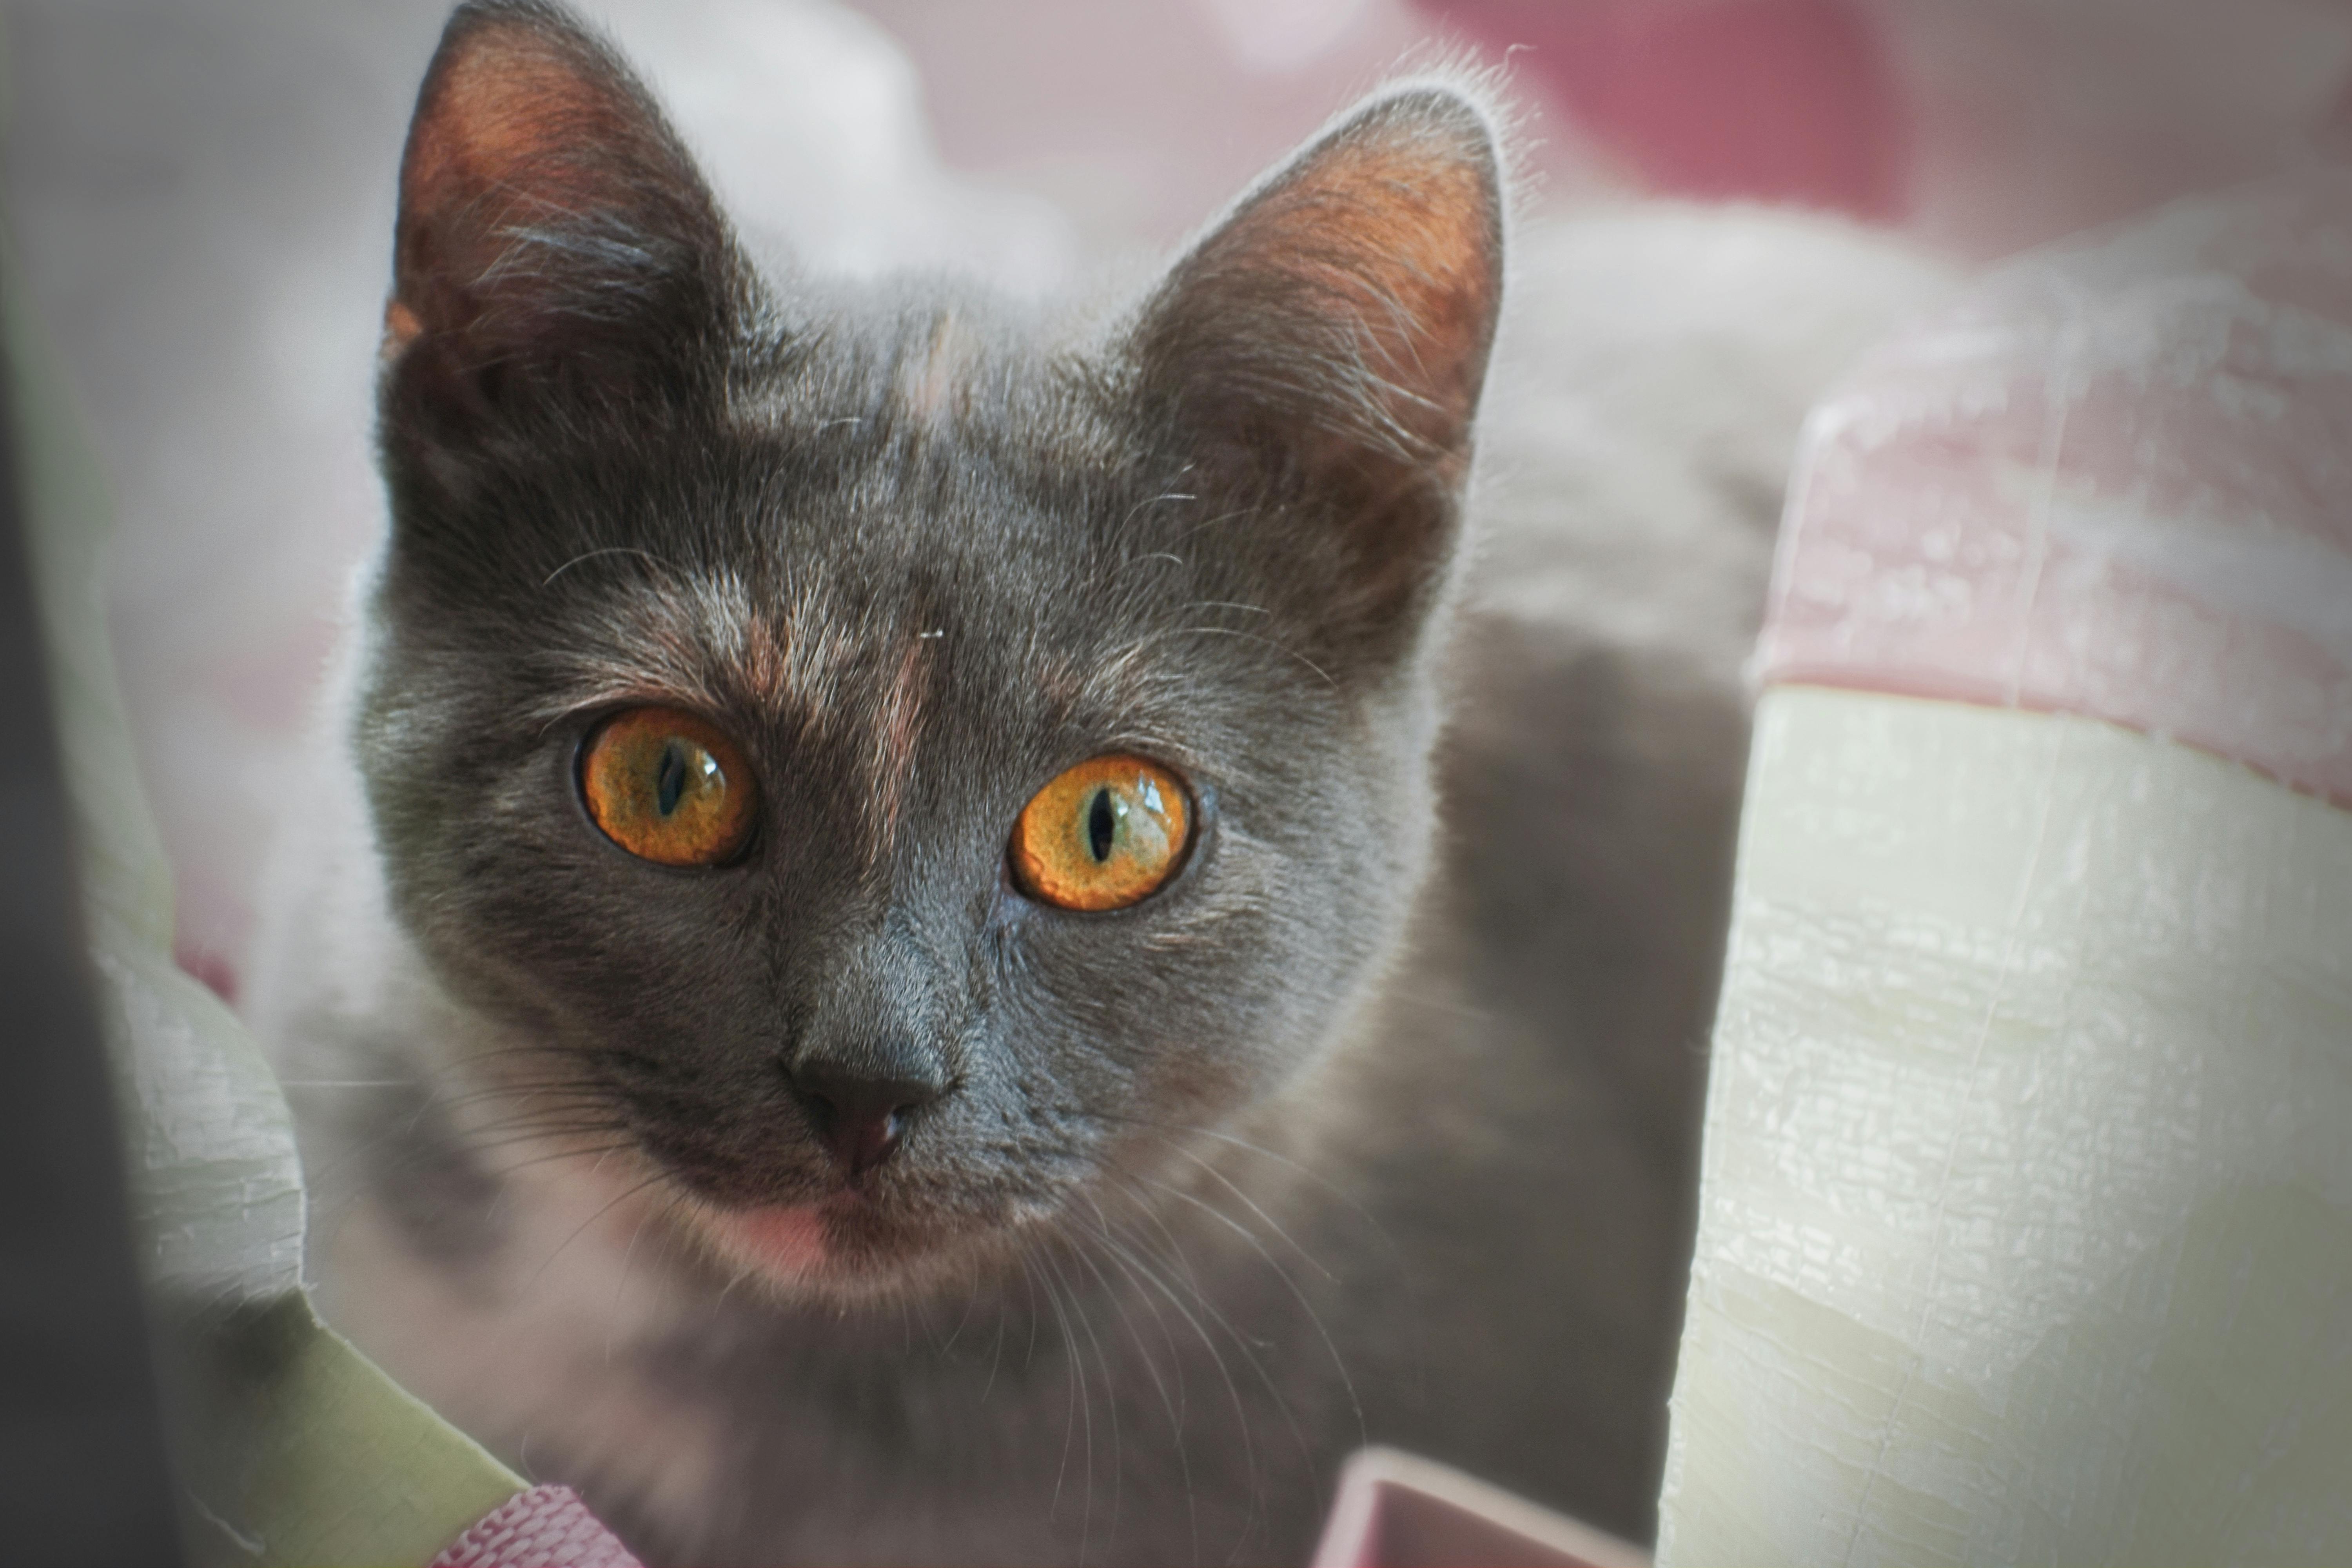 900+ Katzenauge Bilder und Fotos · Kostenlos Downloaden · Pexels Stock-Fotos